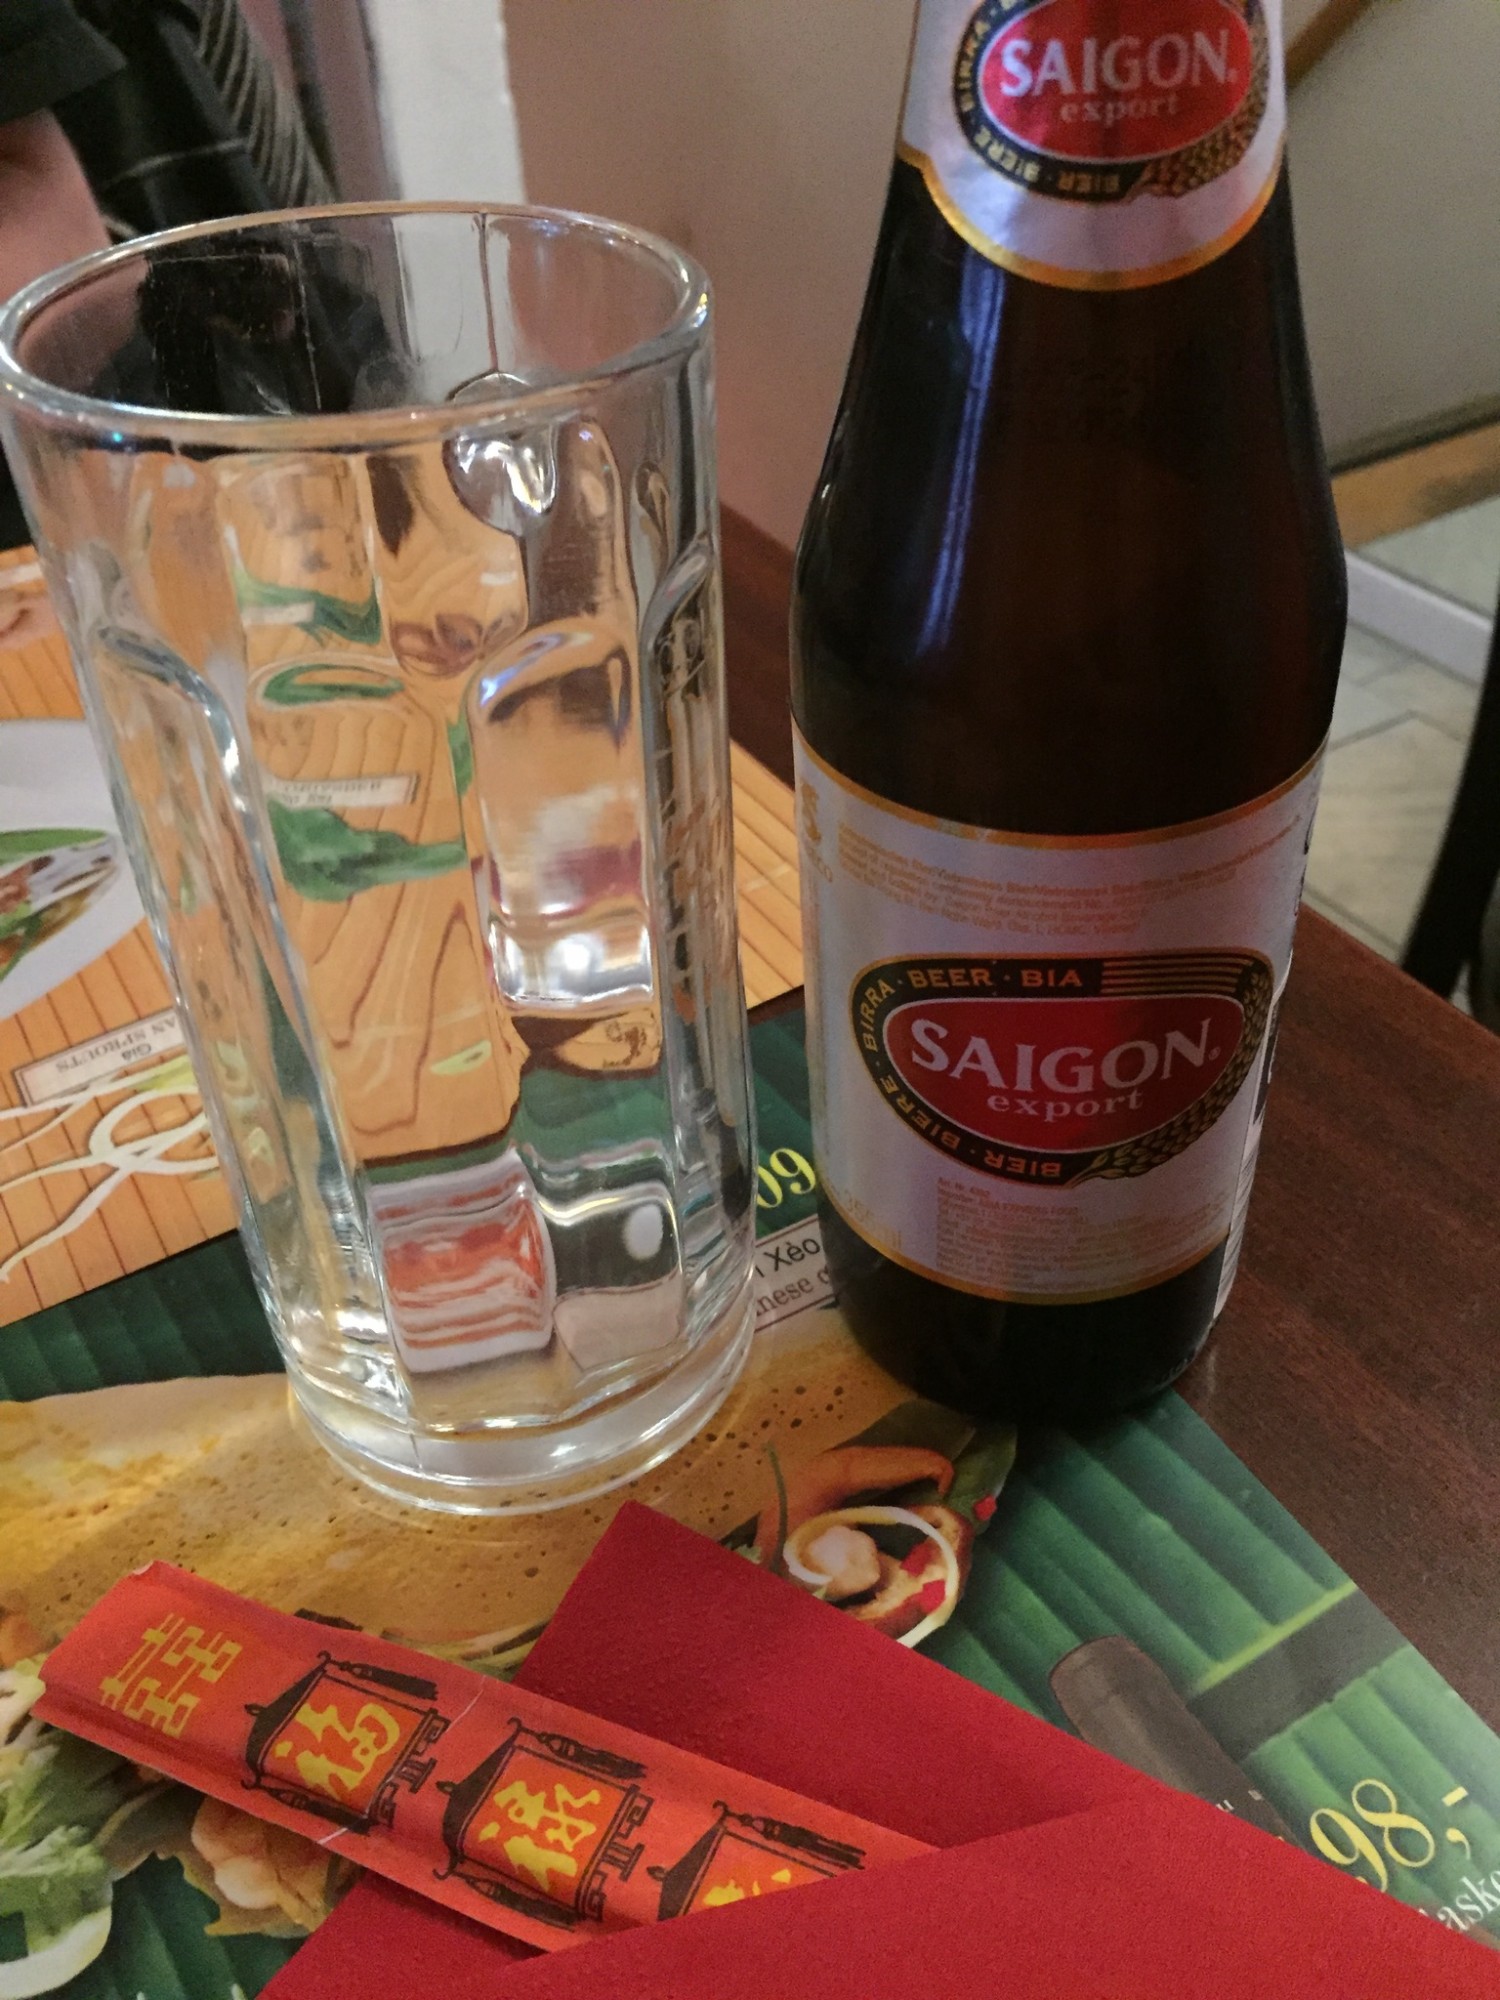 Saigon øl (39 kr)